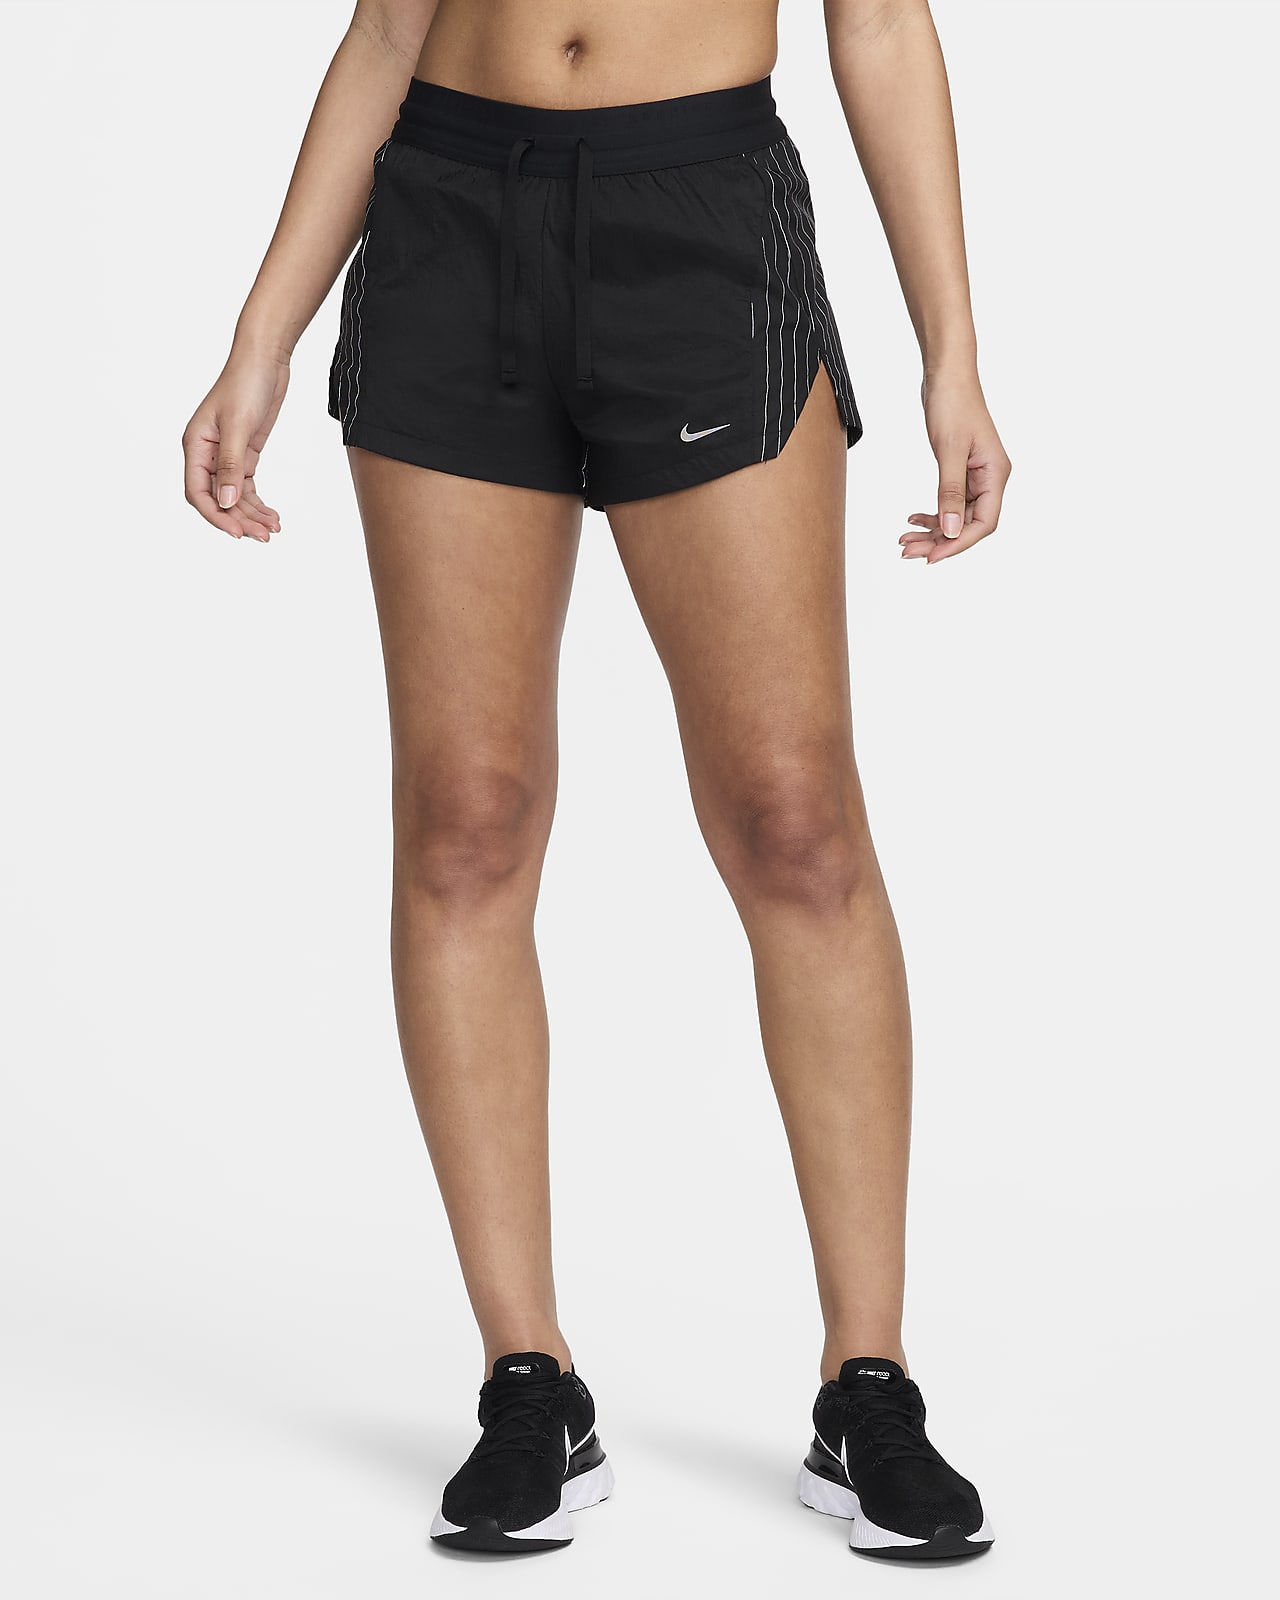 Nike Running Division középmagas derekú, 8 cm-es, bélelt női futórövidnadrág